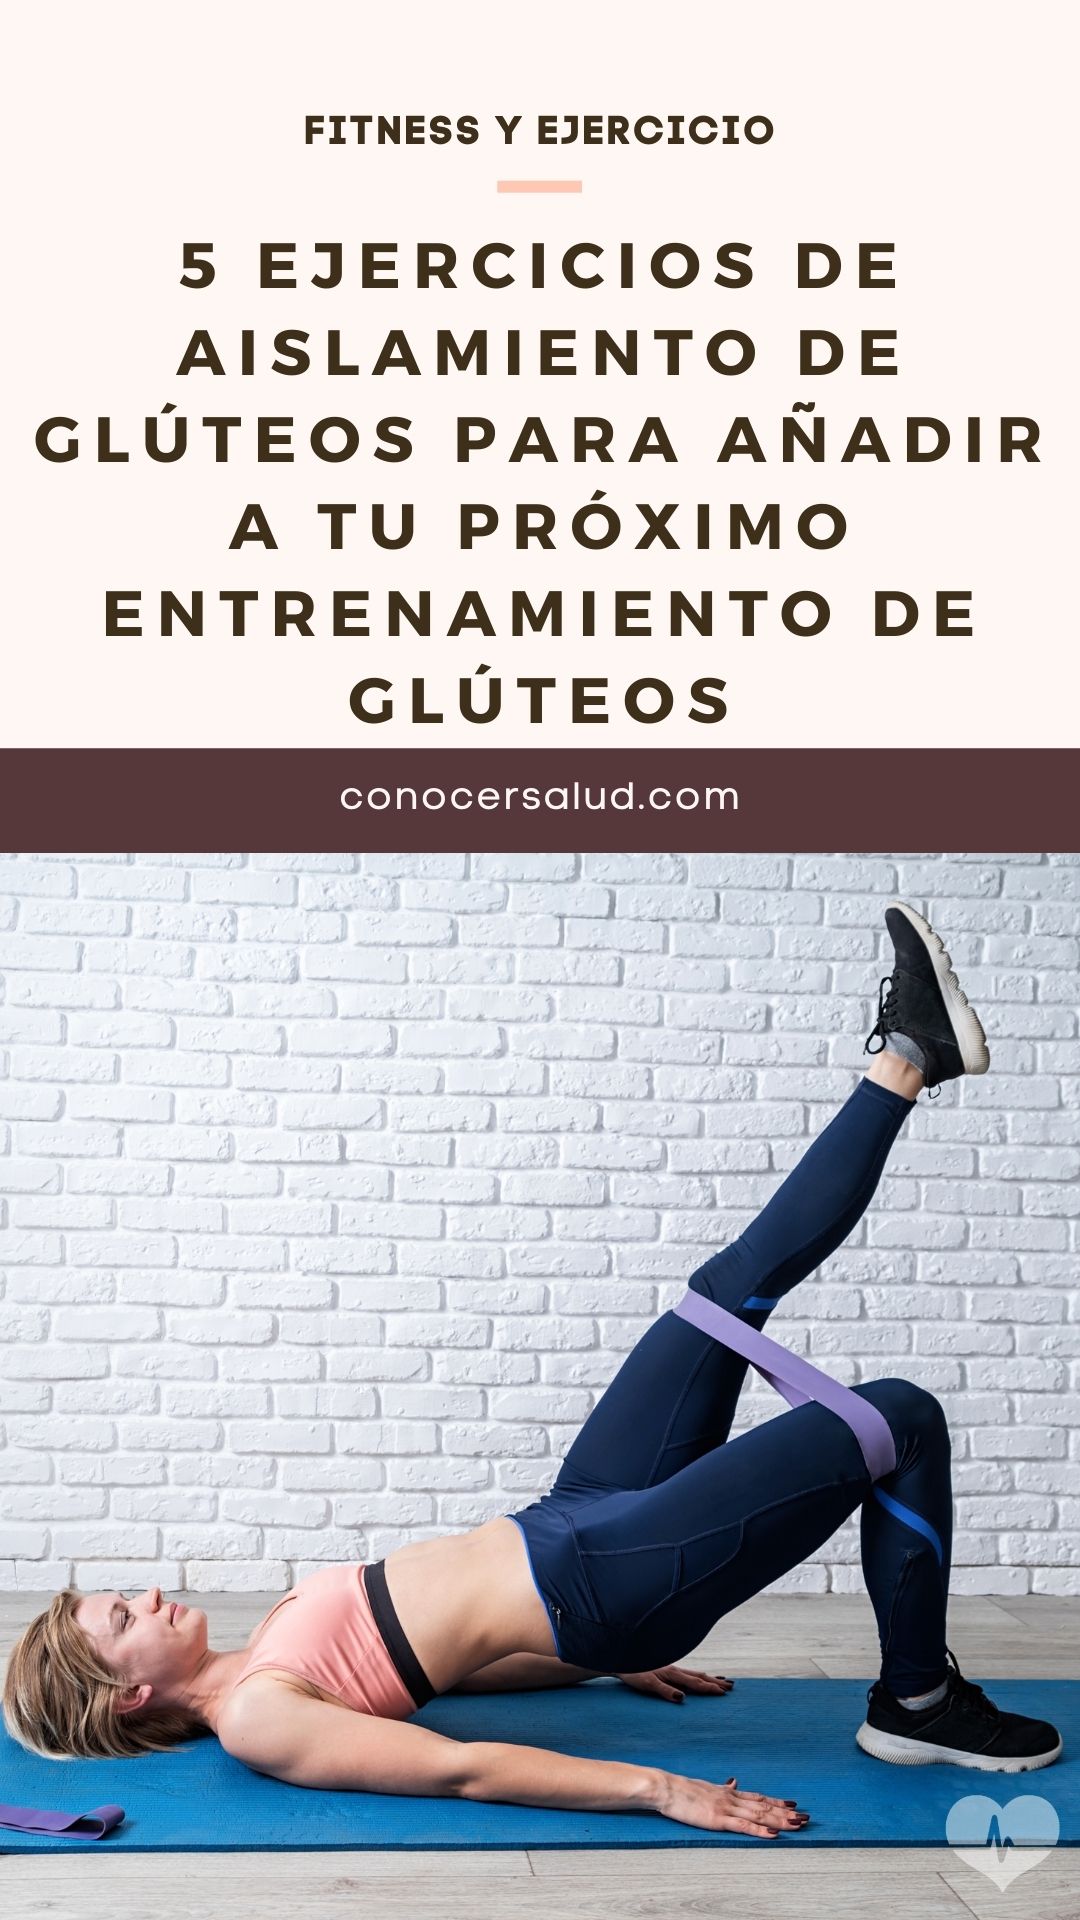 5 ejercicios de aislamiento de glúteos para añadir a tu próximo entrenamiento de glúteos